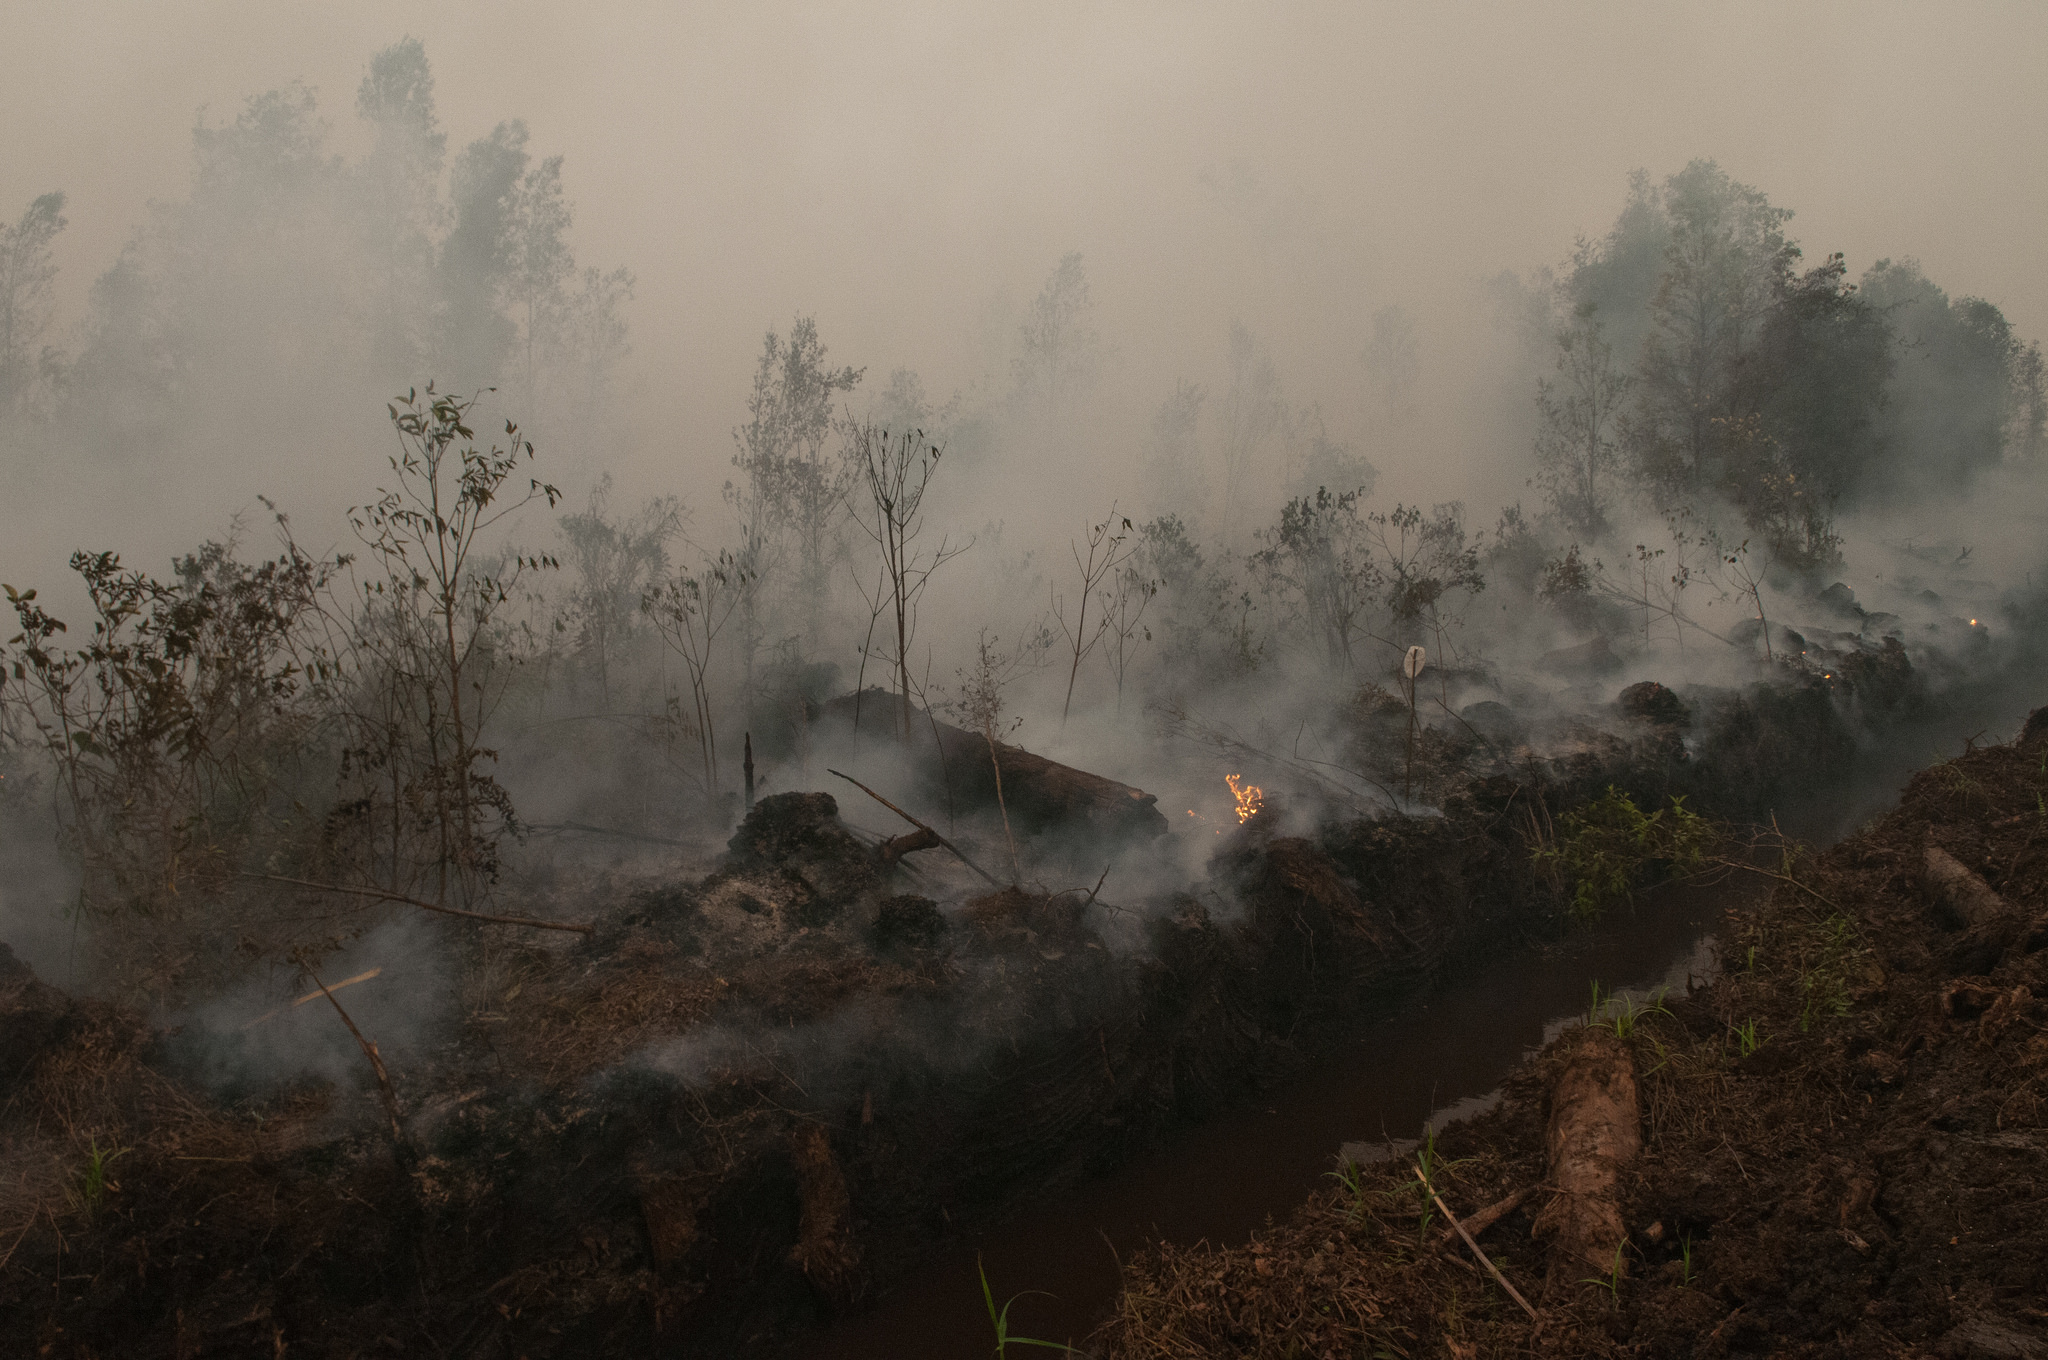 Kebakaran 2015 akibatkan banyak kerugian bagi masyarakat dan negara. © CIFOR